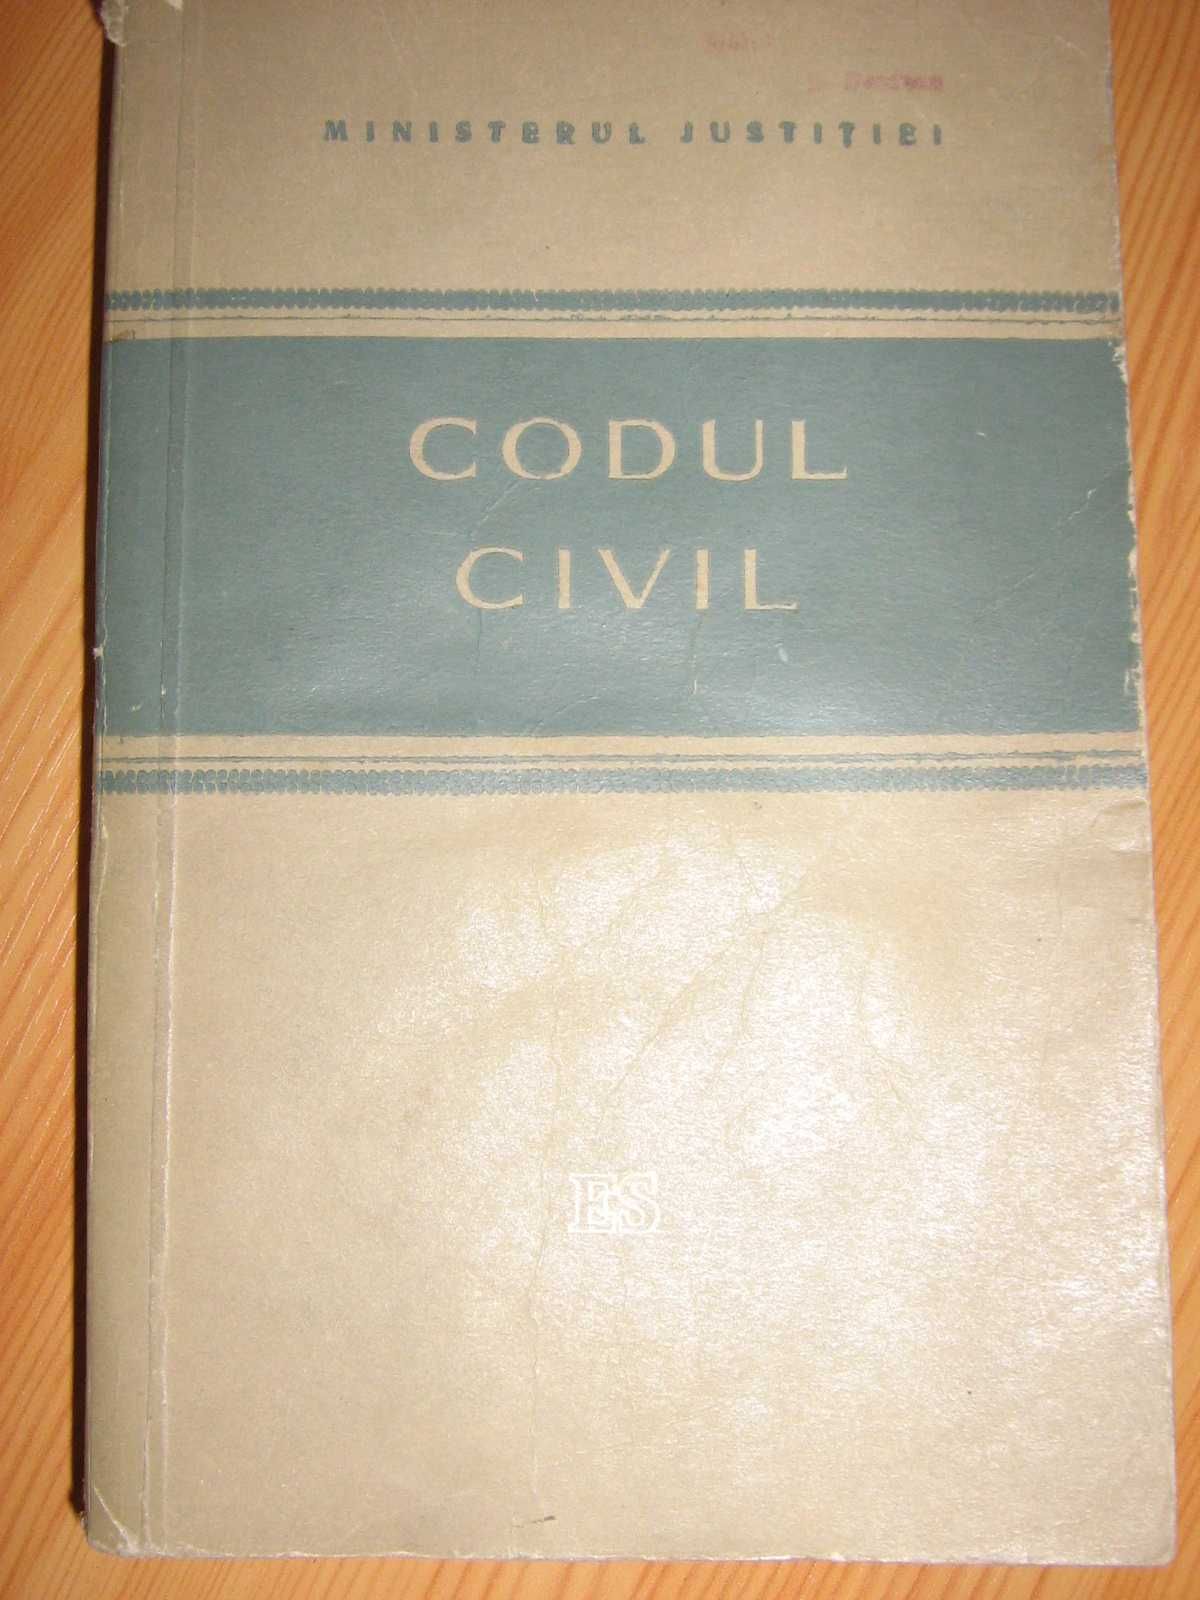 Codul civil din 1958